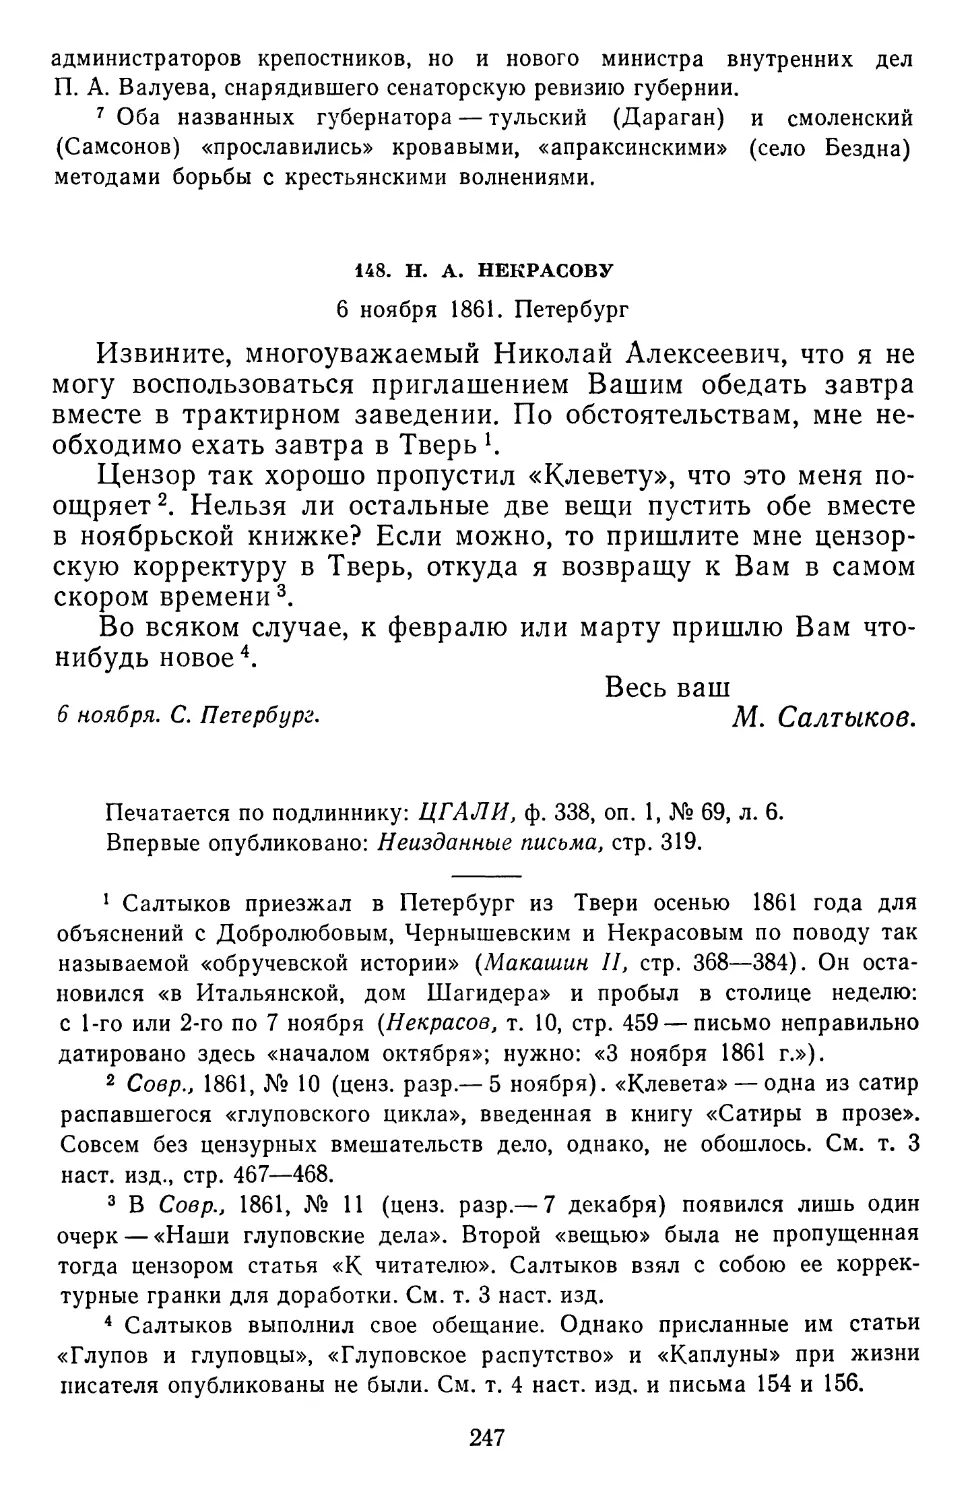 148.Н.А. Некрасову. 6 ноября 1861. Петербург